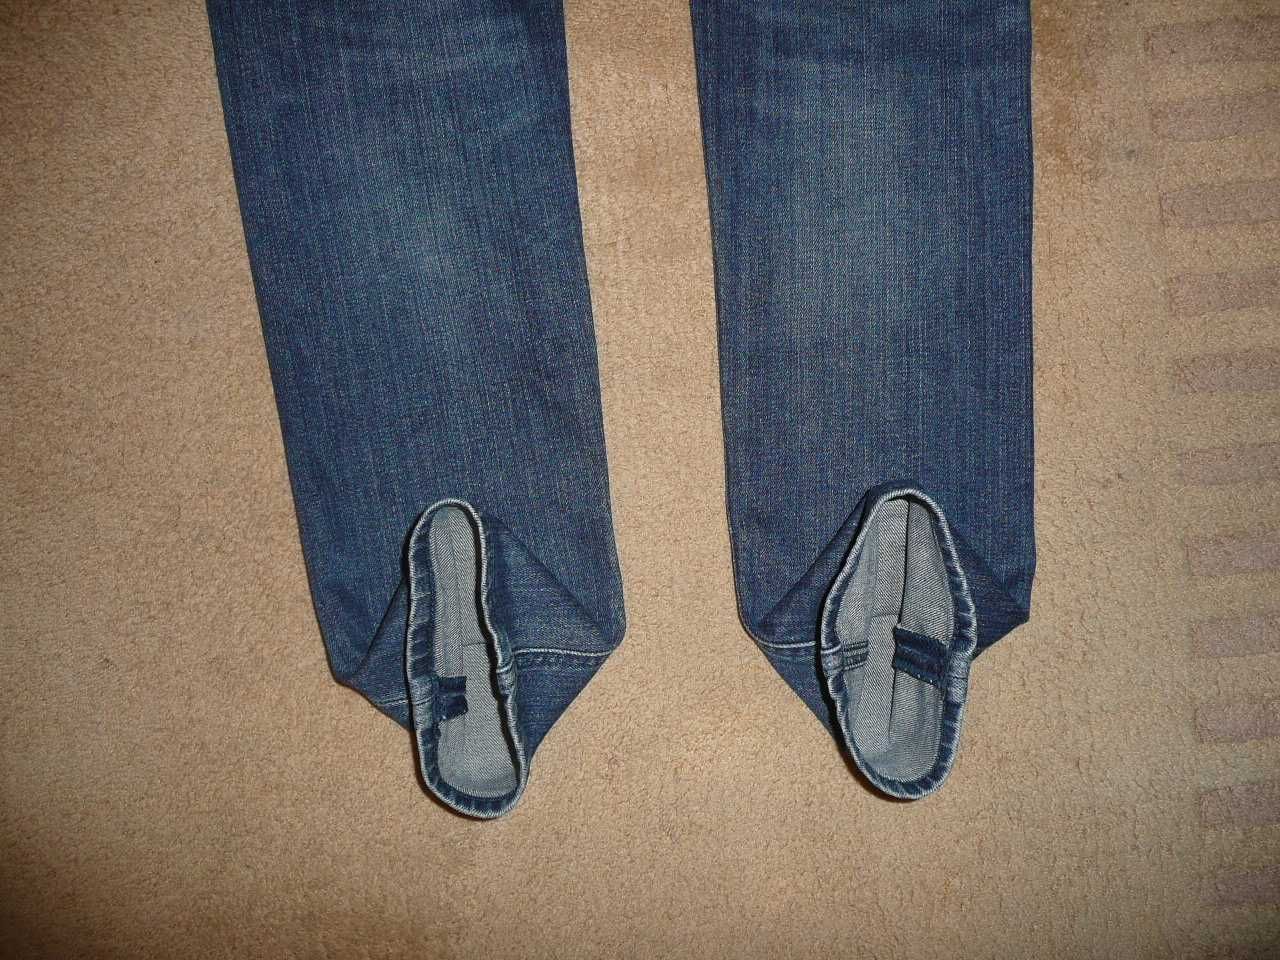 Spodnie dżinsy LEE W30/L34=39,5/107cm jeansy rurki